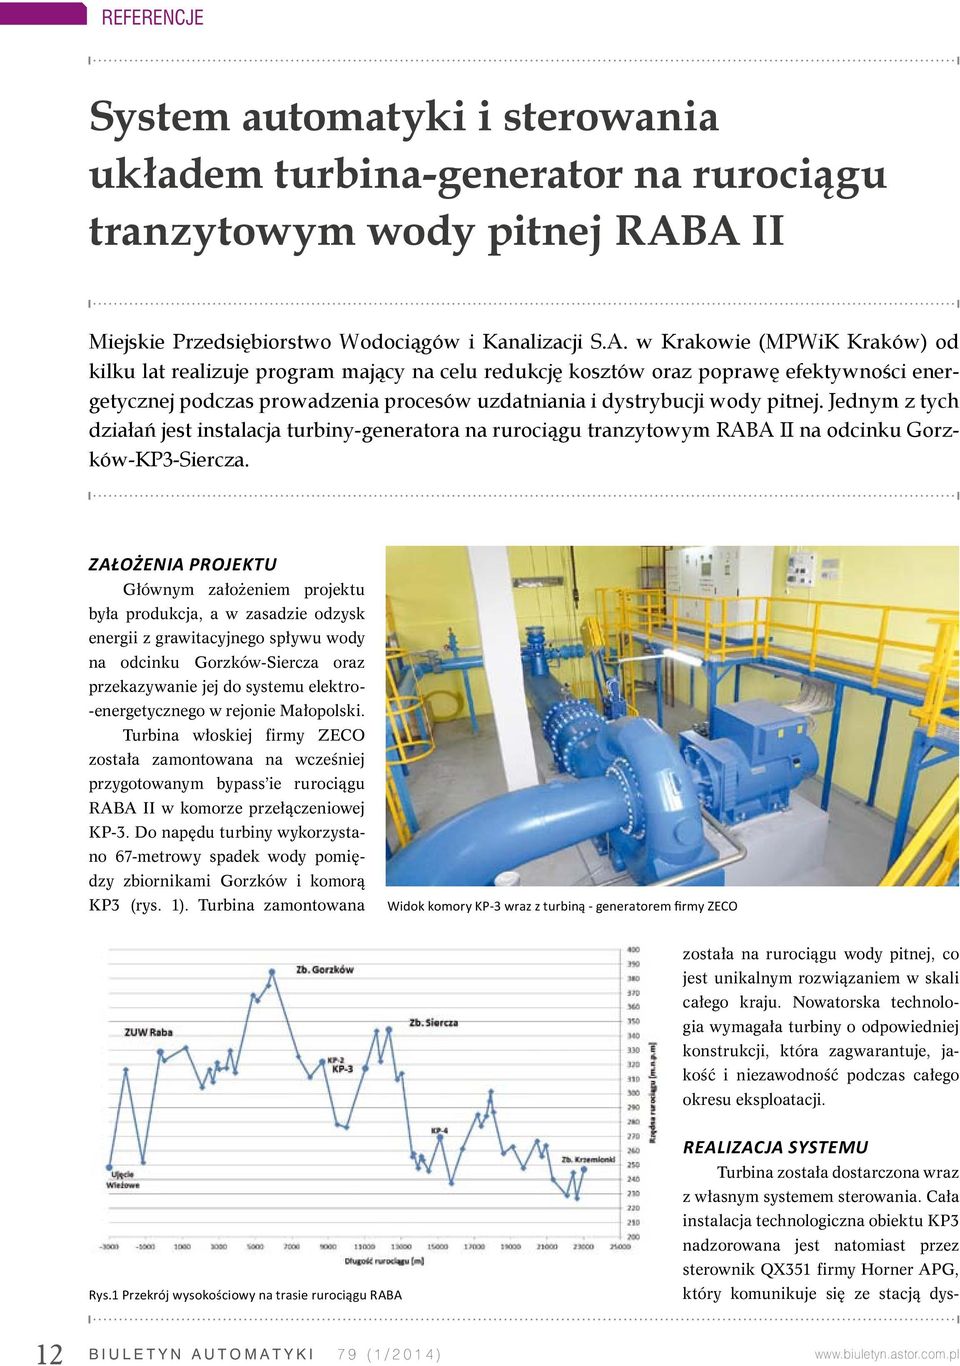 Jednym z tych działań jest instalacja turbiny-generatora na rurociągu tranzytowym RABA II na odcinku Gorzków-KP3-Siercza.